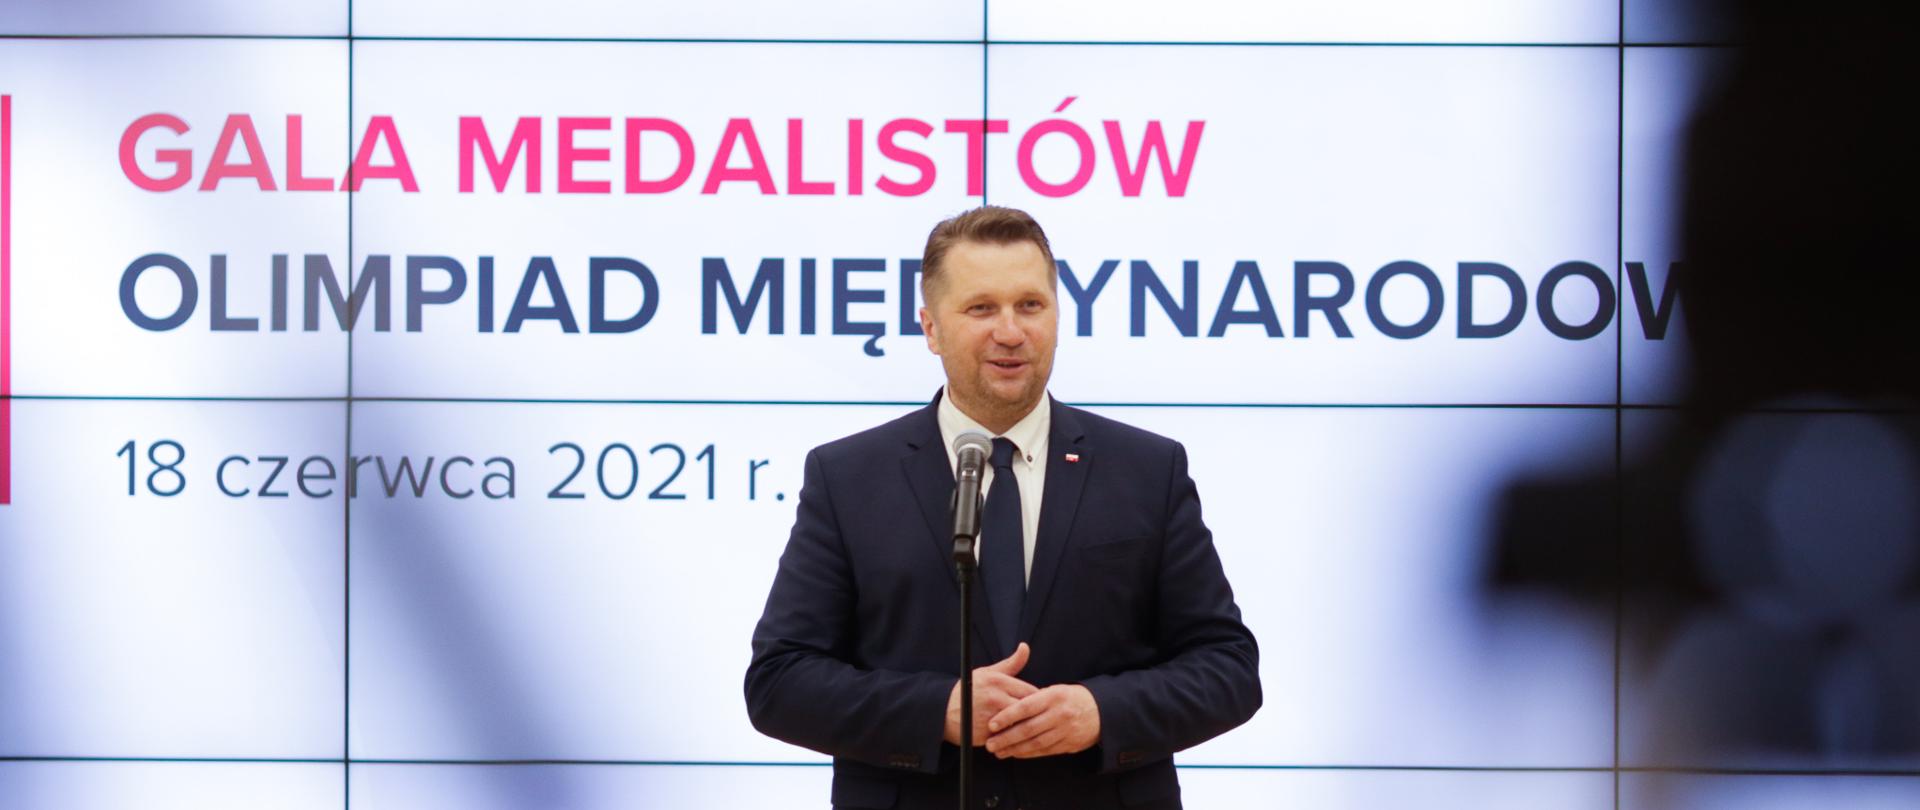 Minister Przemysław Czarnek stoi przy mikrofonie. W tle duży ekran z napisem Gala medalistów olimpiad międzynarodowych 18 czerwca 2021 r. Z prawej strony rozmazany widok kamery telewizyjnej. 